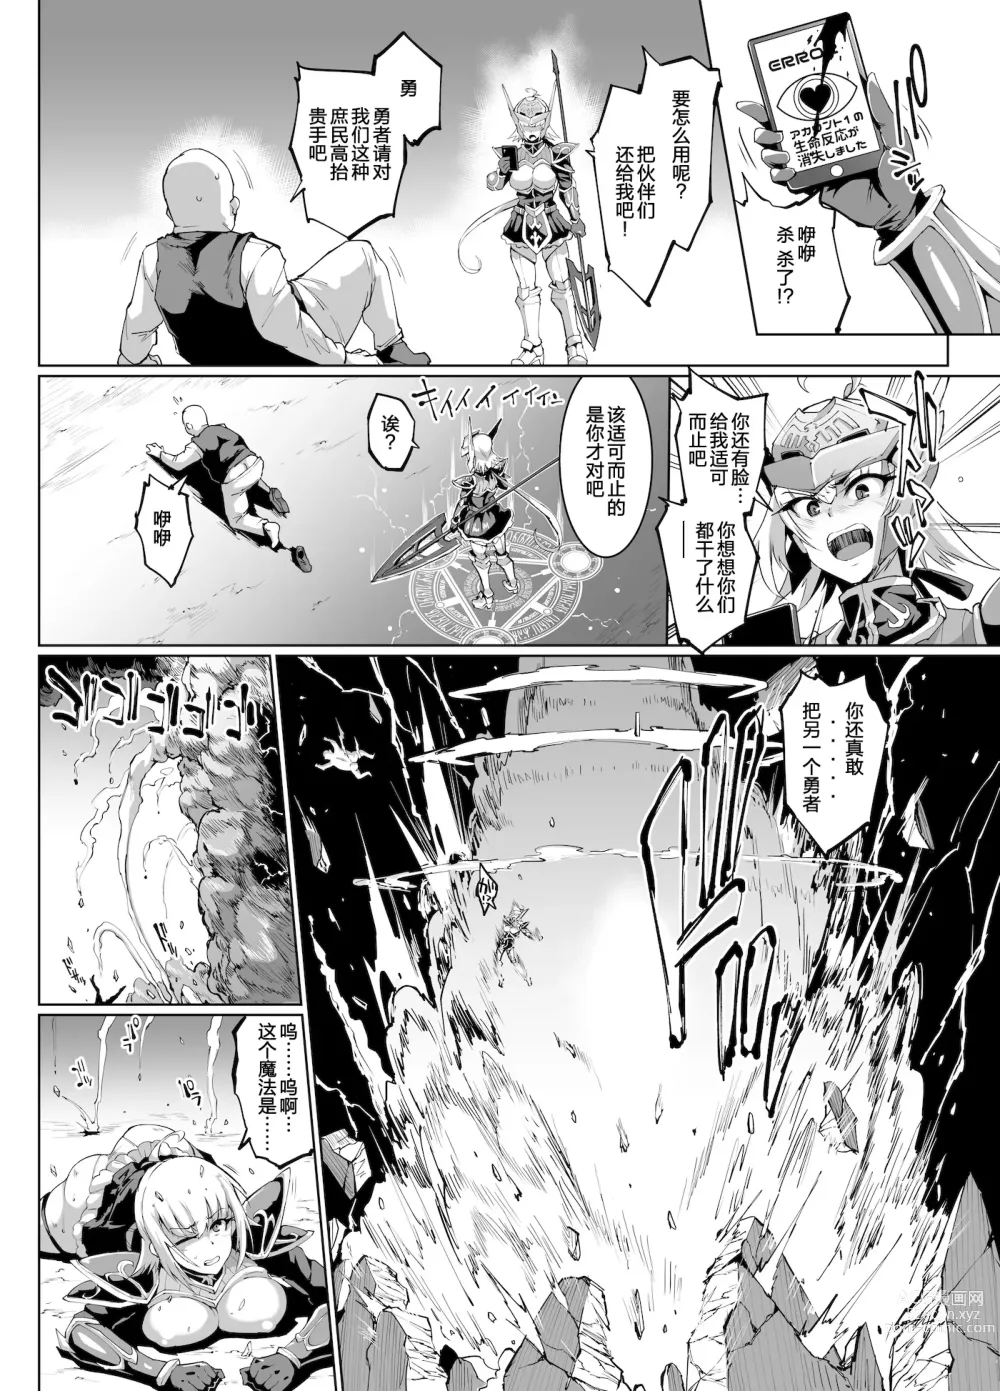 Page 5 of manga HYPNO .APP FANTASIA Ch 6+7 (decensored)